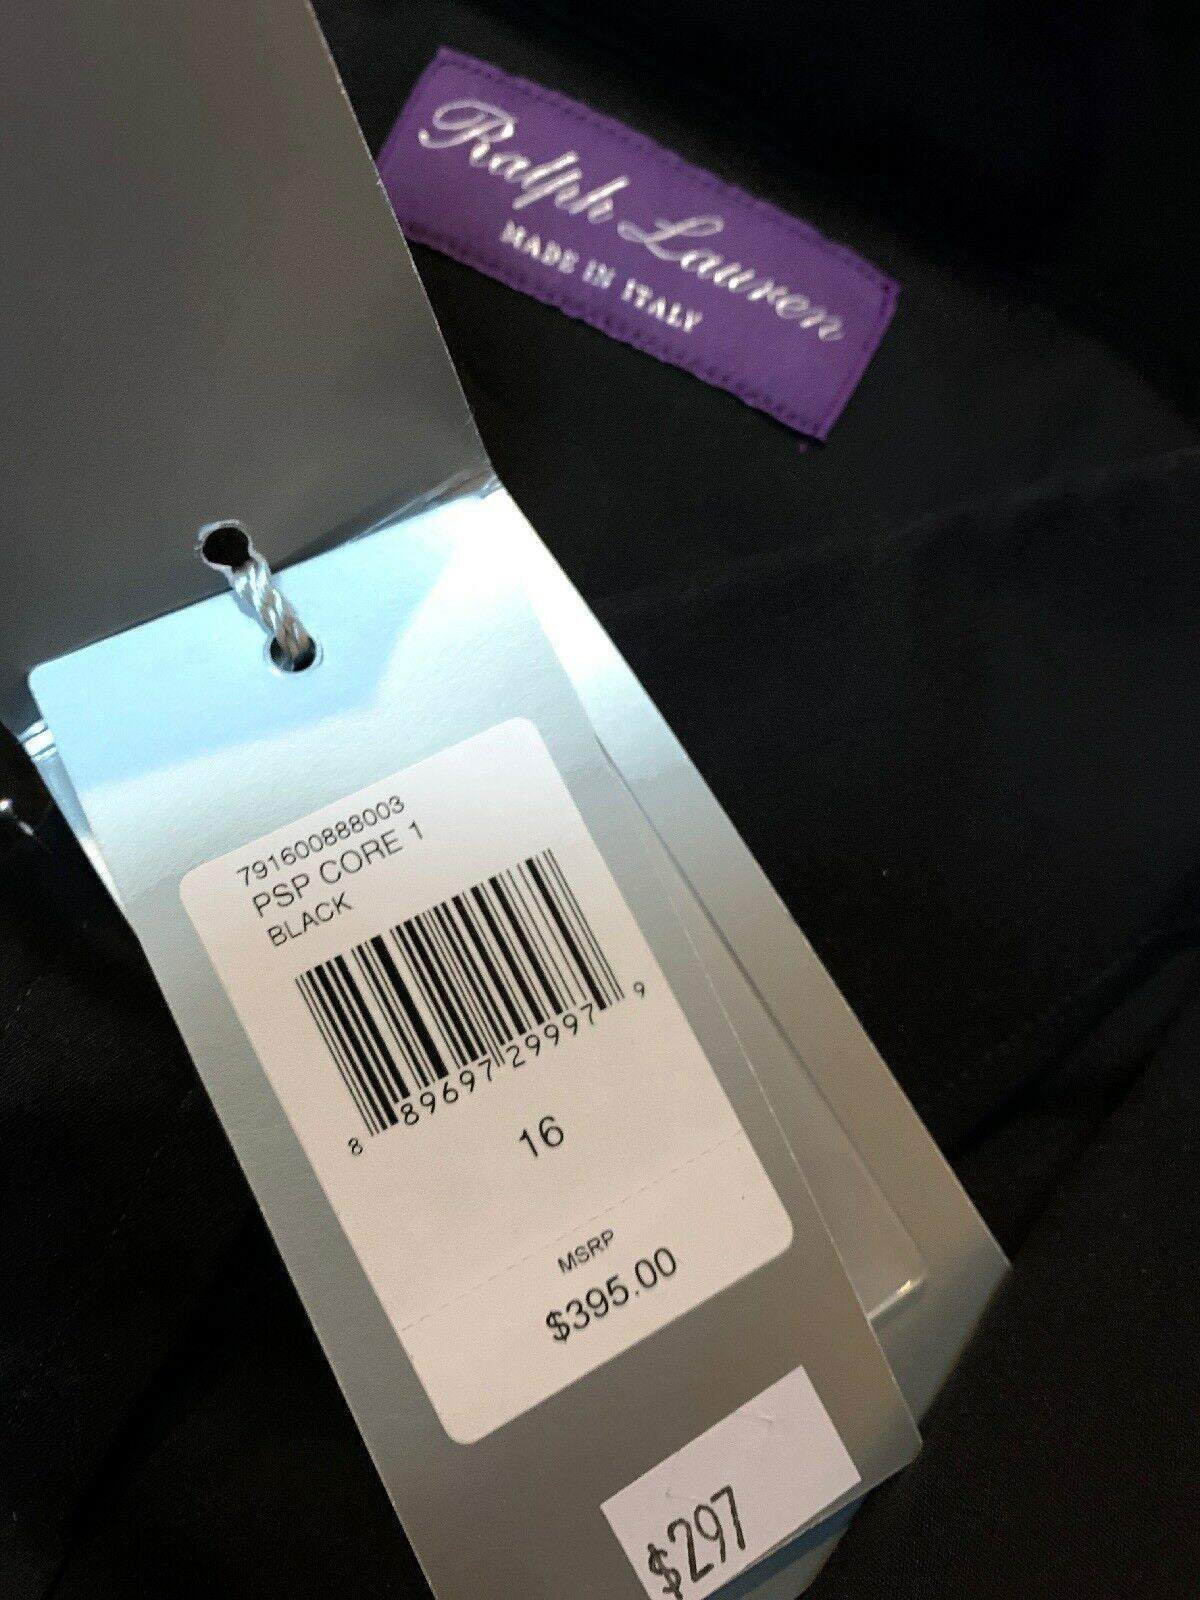 PoNWT $395 Мужская классическая рубашка Ralph Lauren Purple Label черная, размер 41/16, Италия